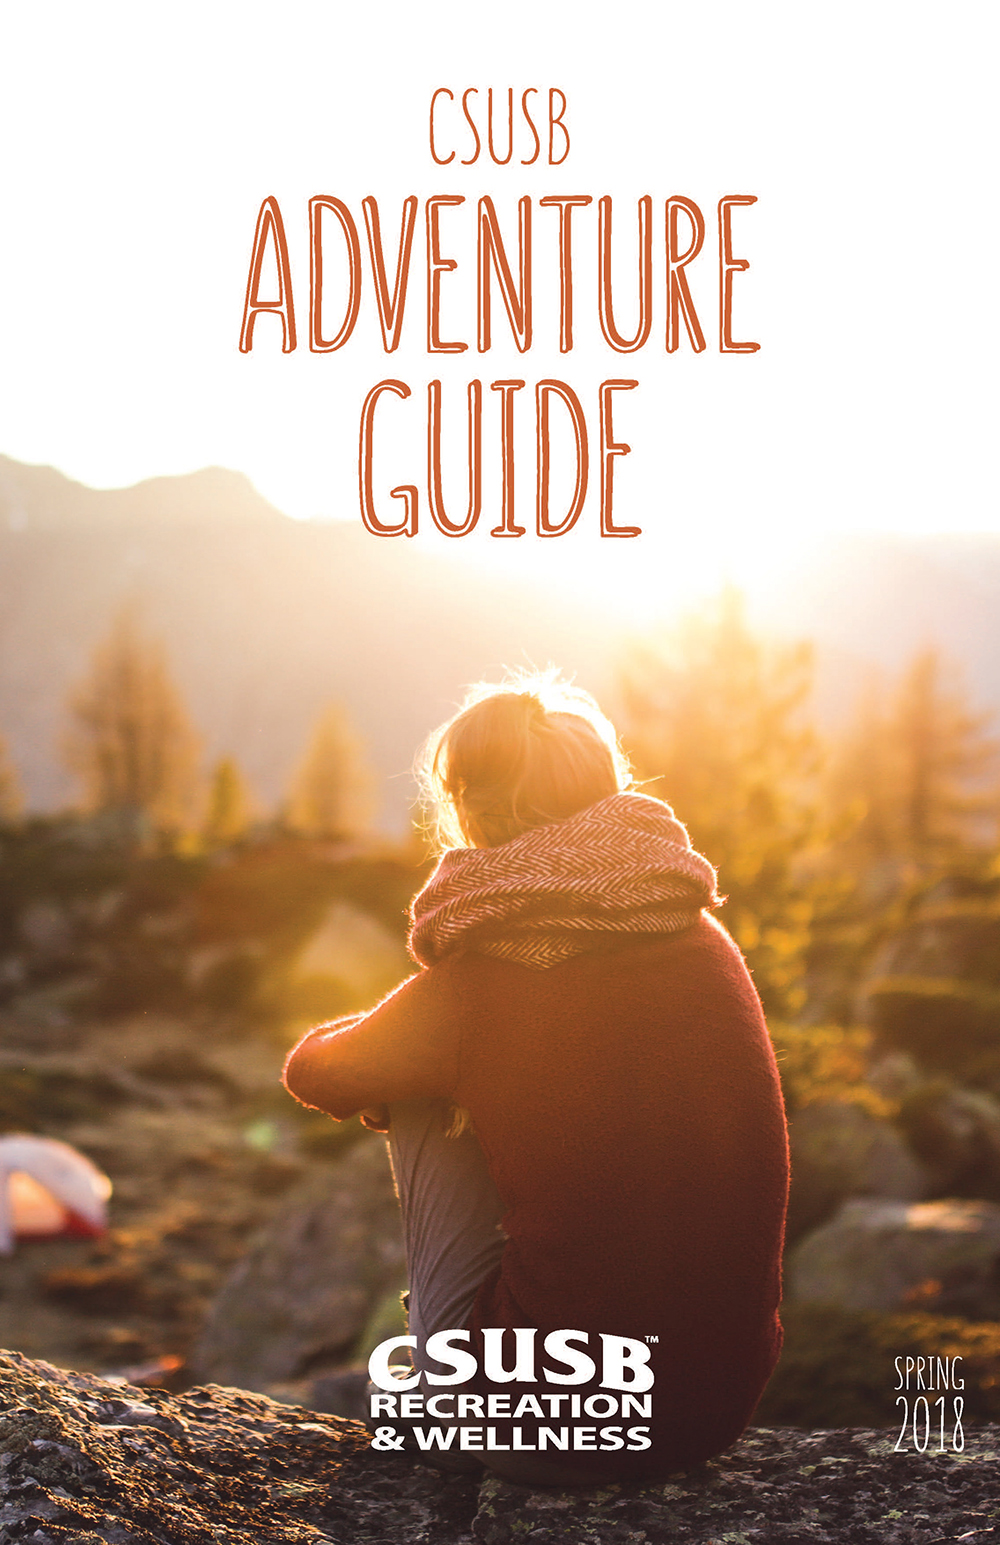 CSUSB Adventure Guide - CSUSB Recreation & Wellness